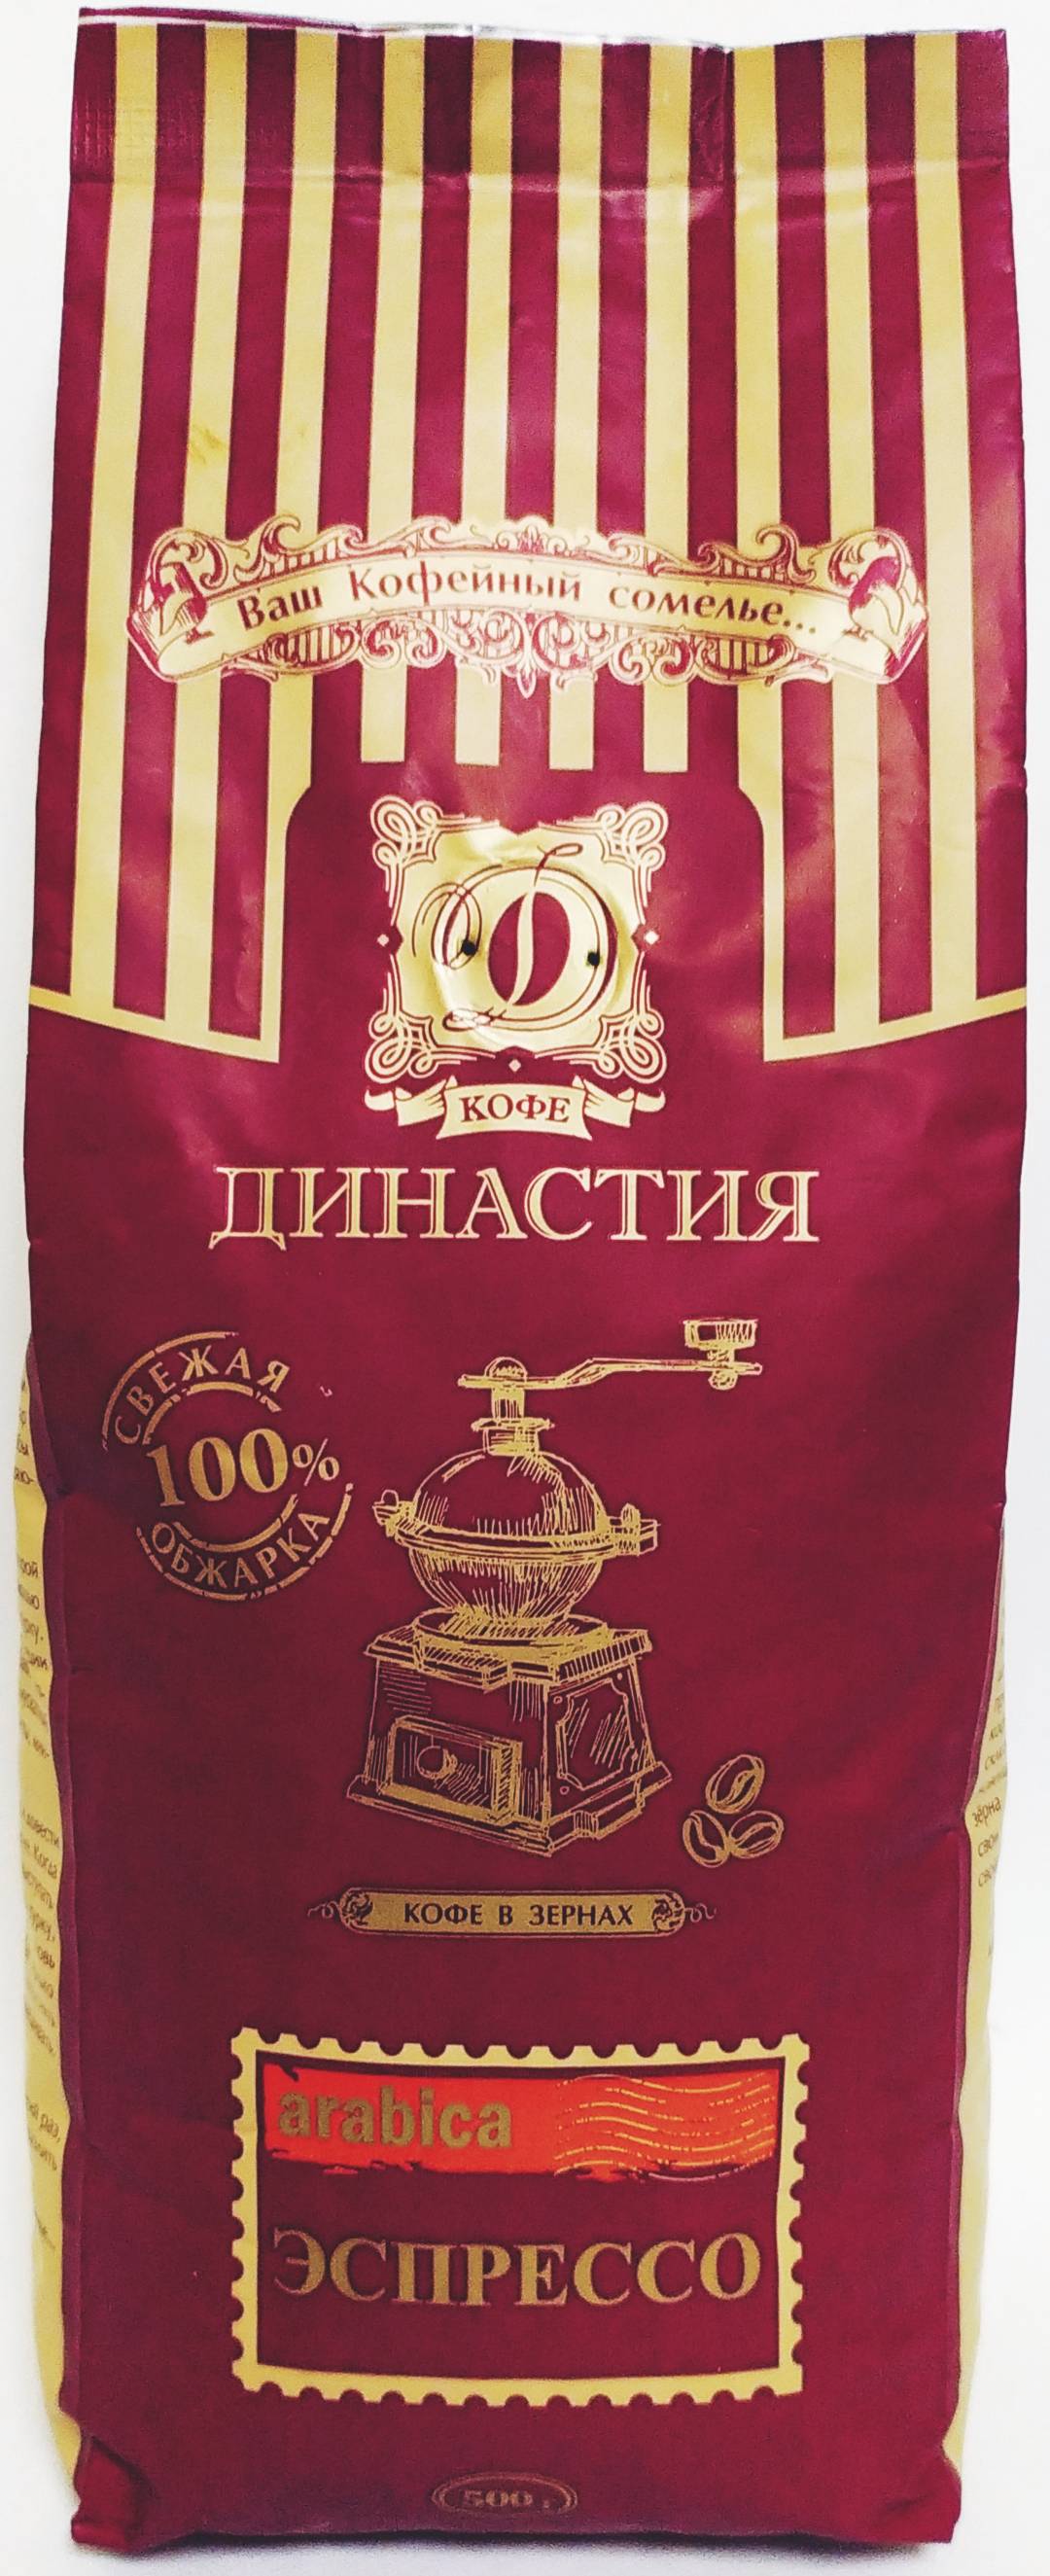 Купить онлайн Кофе Эспрессо Арабика в зернах в интернет-магазине Беришка с доставкой по Хабаровску и по России недорого.